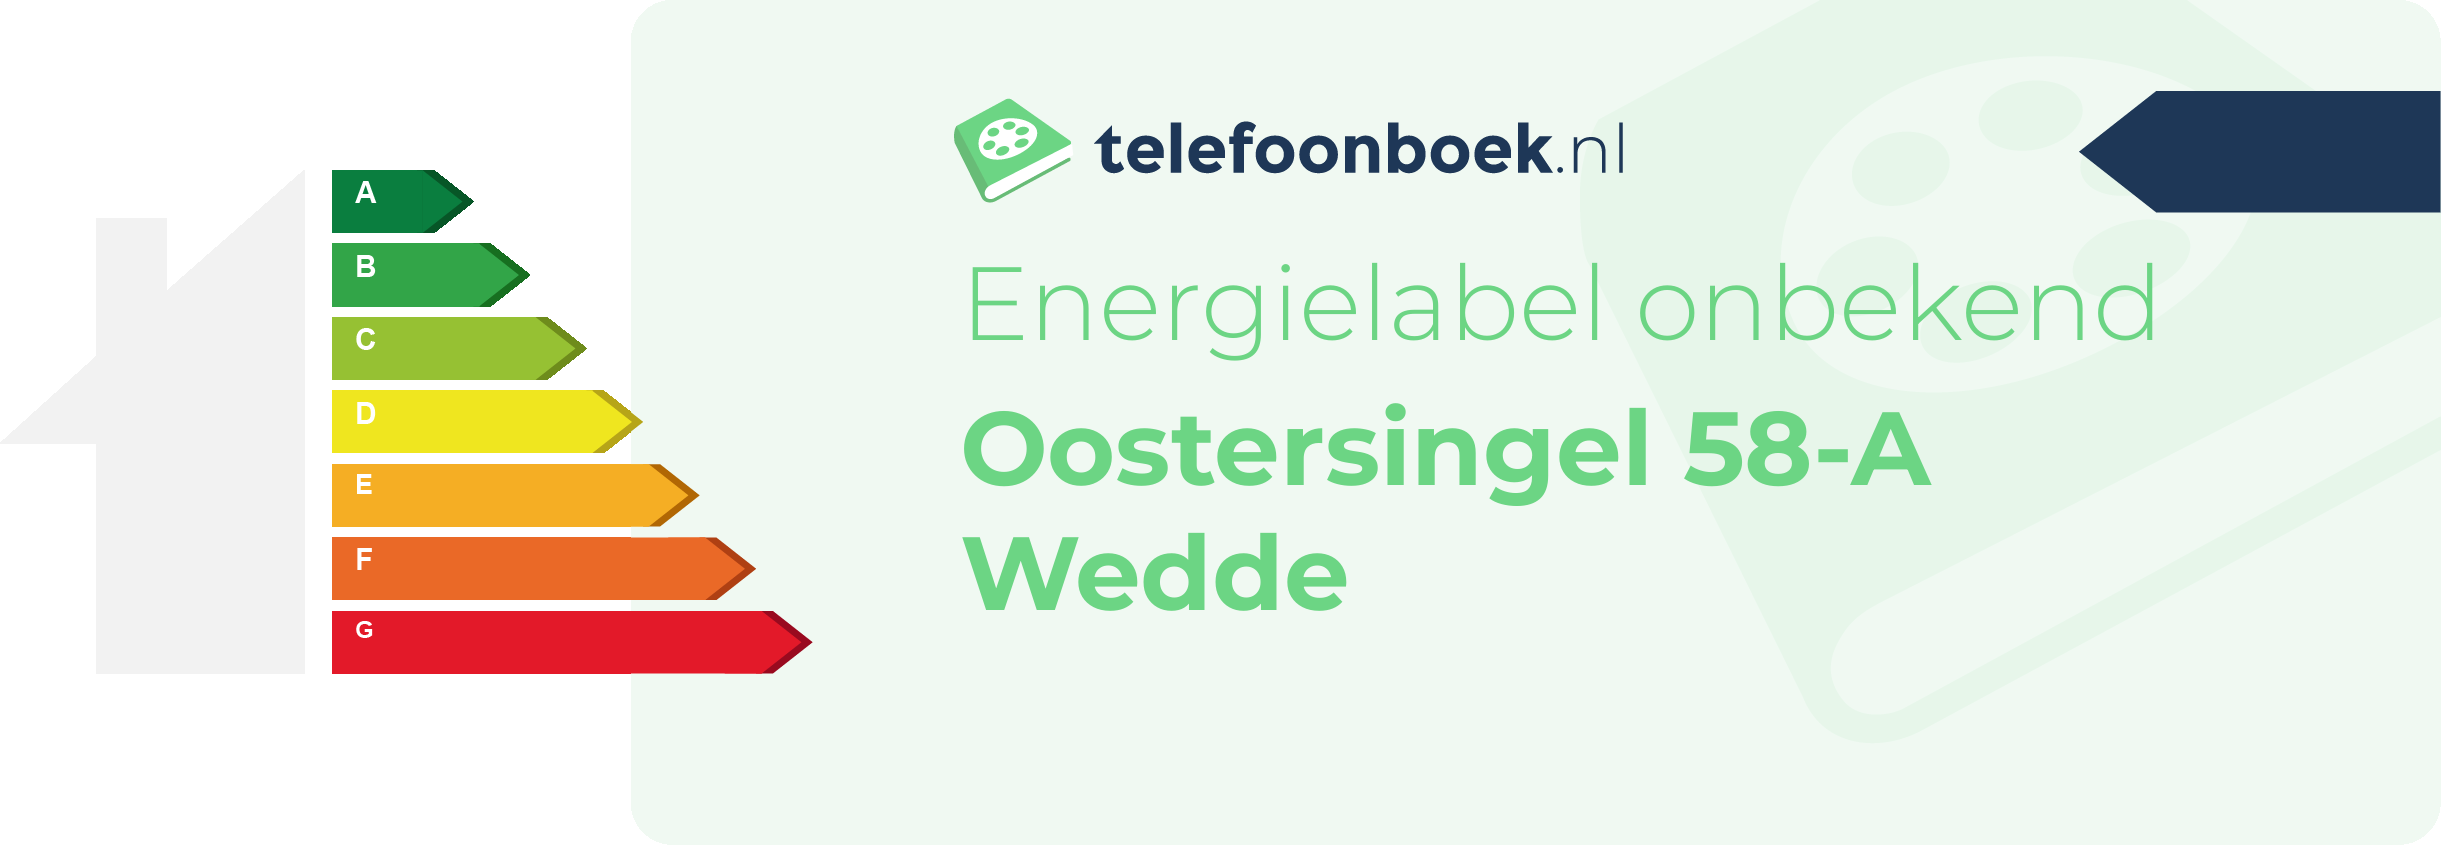 Energielabel Oostersingel 58-A Wedde